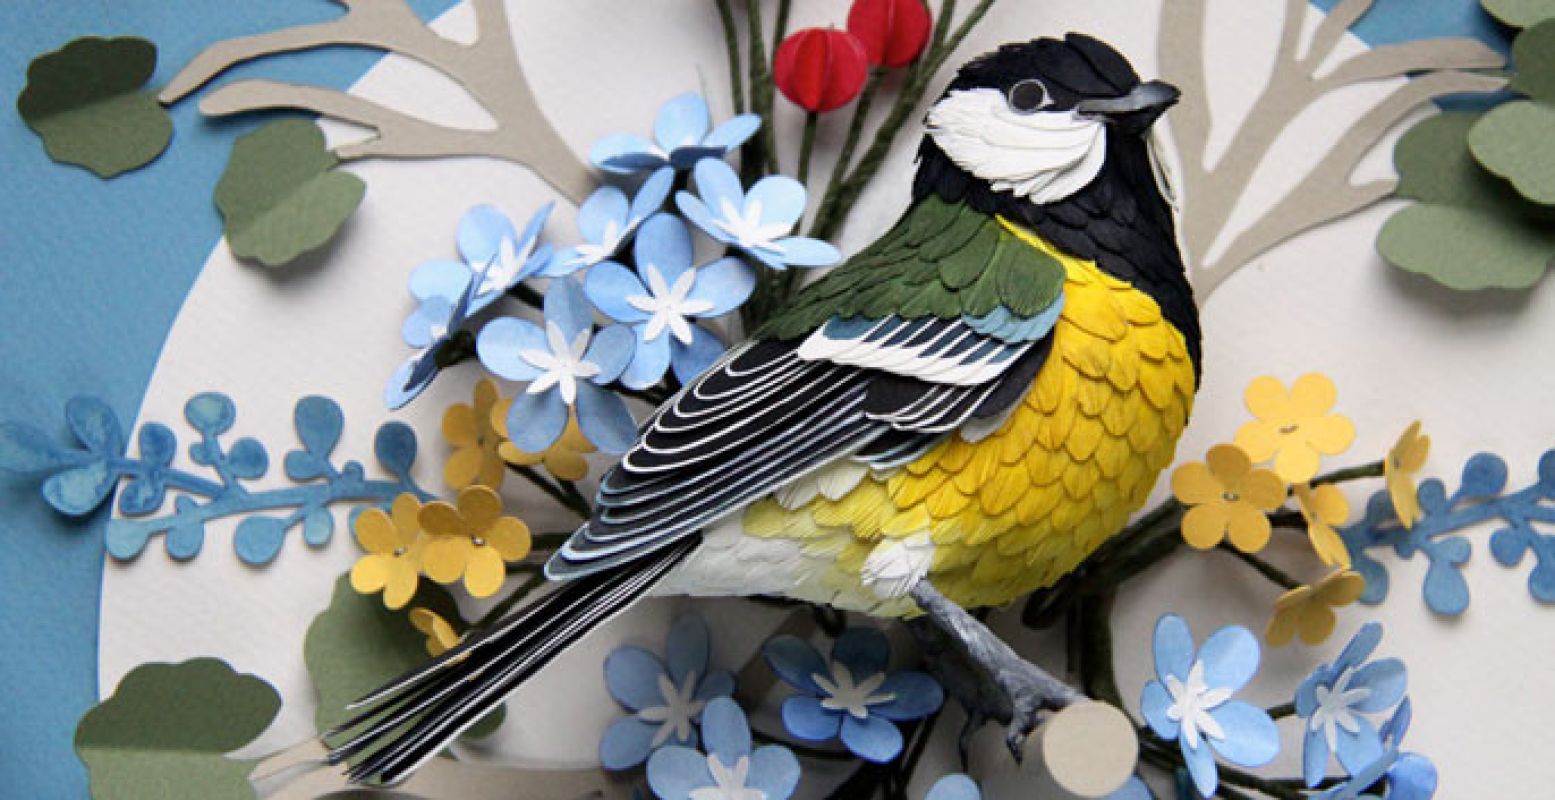 Bekijk het kleurrijke kunstwerk  Birdstamp  van Diana Beltram in het CODA Museum! Foto: CODA Museum